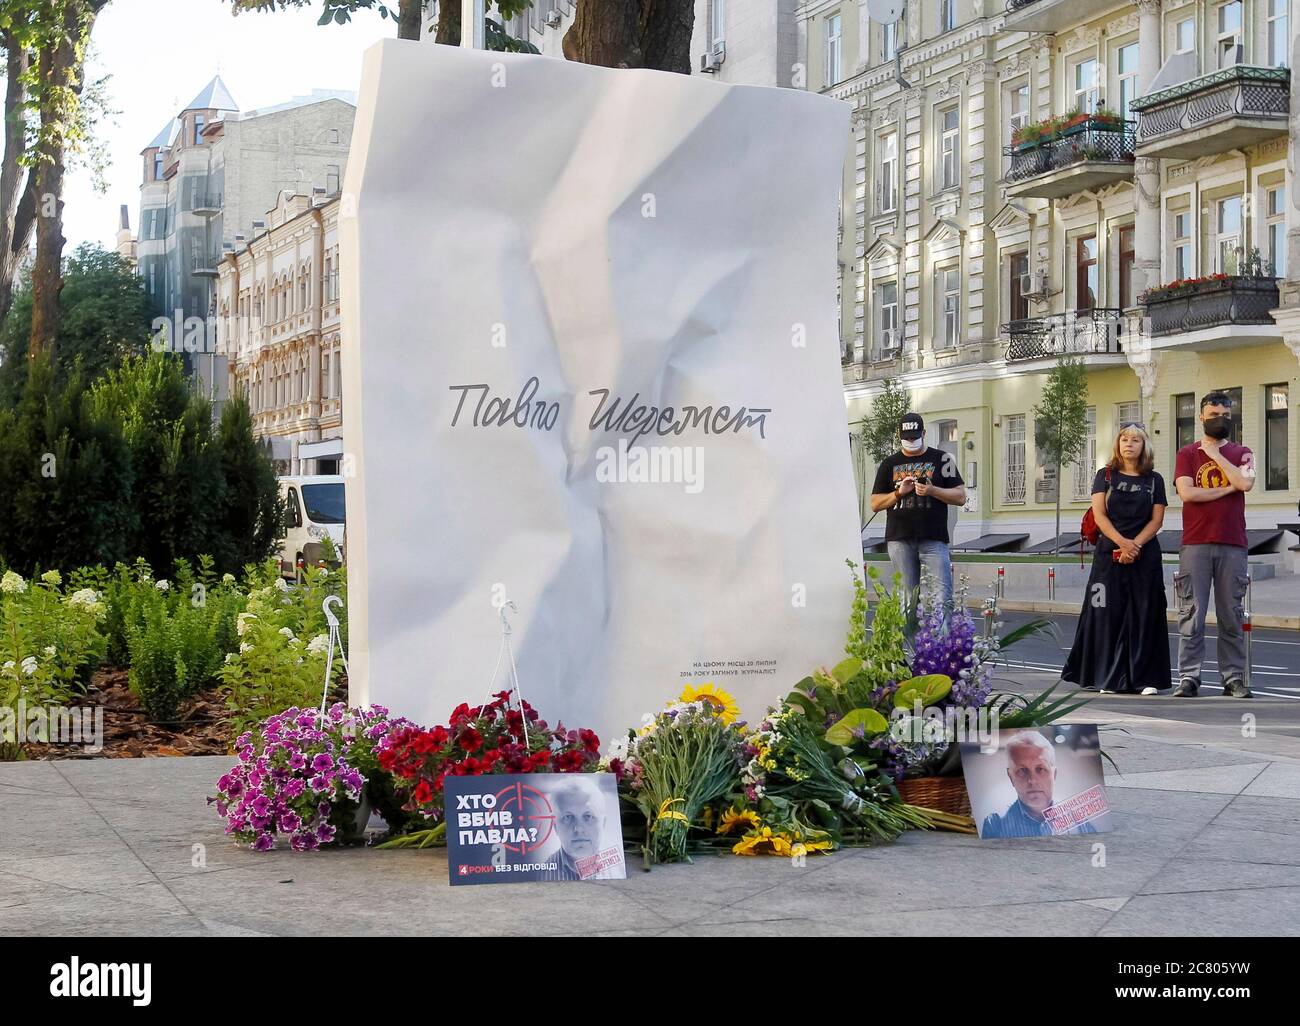 Fiori e ritratti posati al posto del giornalista Pavel Sheremet uccidendo per celebrare il suo anniversario di morte a Kiev.quattro anni più tardi i giornalisti e gli amici di Pavel Sheremet si riunirono di nuovo per onorare la sua memoria chiedendo un'indagine nel suo uccisione. Pavel Sheremet, giornalista russo e ucraino di origine bielorussa, 44 anni, che lavorava in Ucraina Pravda e radio Vesti, morì a Kiev il 20 luglio 2016 in un'esplosione di automobili. Nel dicembre 2019 il ministro ucraino degli interni Arsen Avakov ha detto che sono stati arrestati volontari di guerra sospettati di uccidere Pavel Sheremet. Gli investigatori di polizia sospettano un gruppo di cinque pe Foto Stock